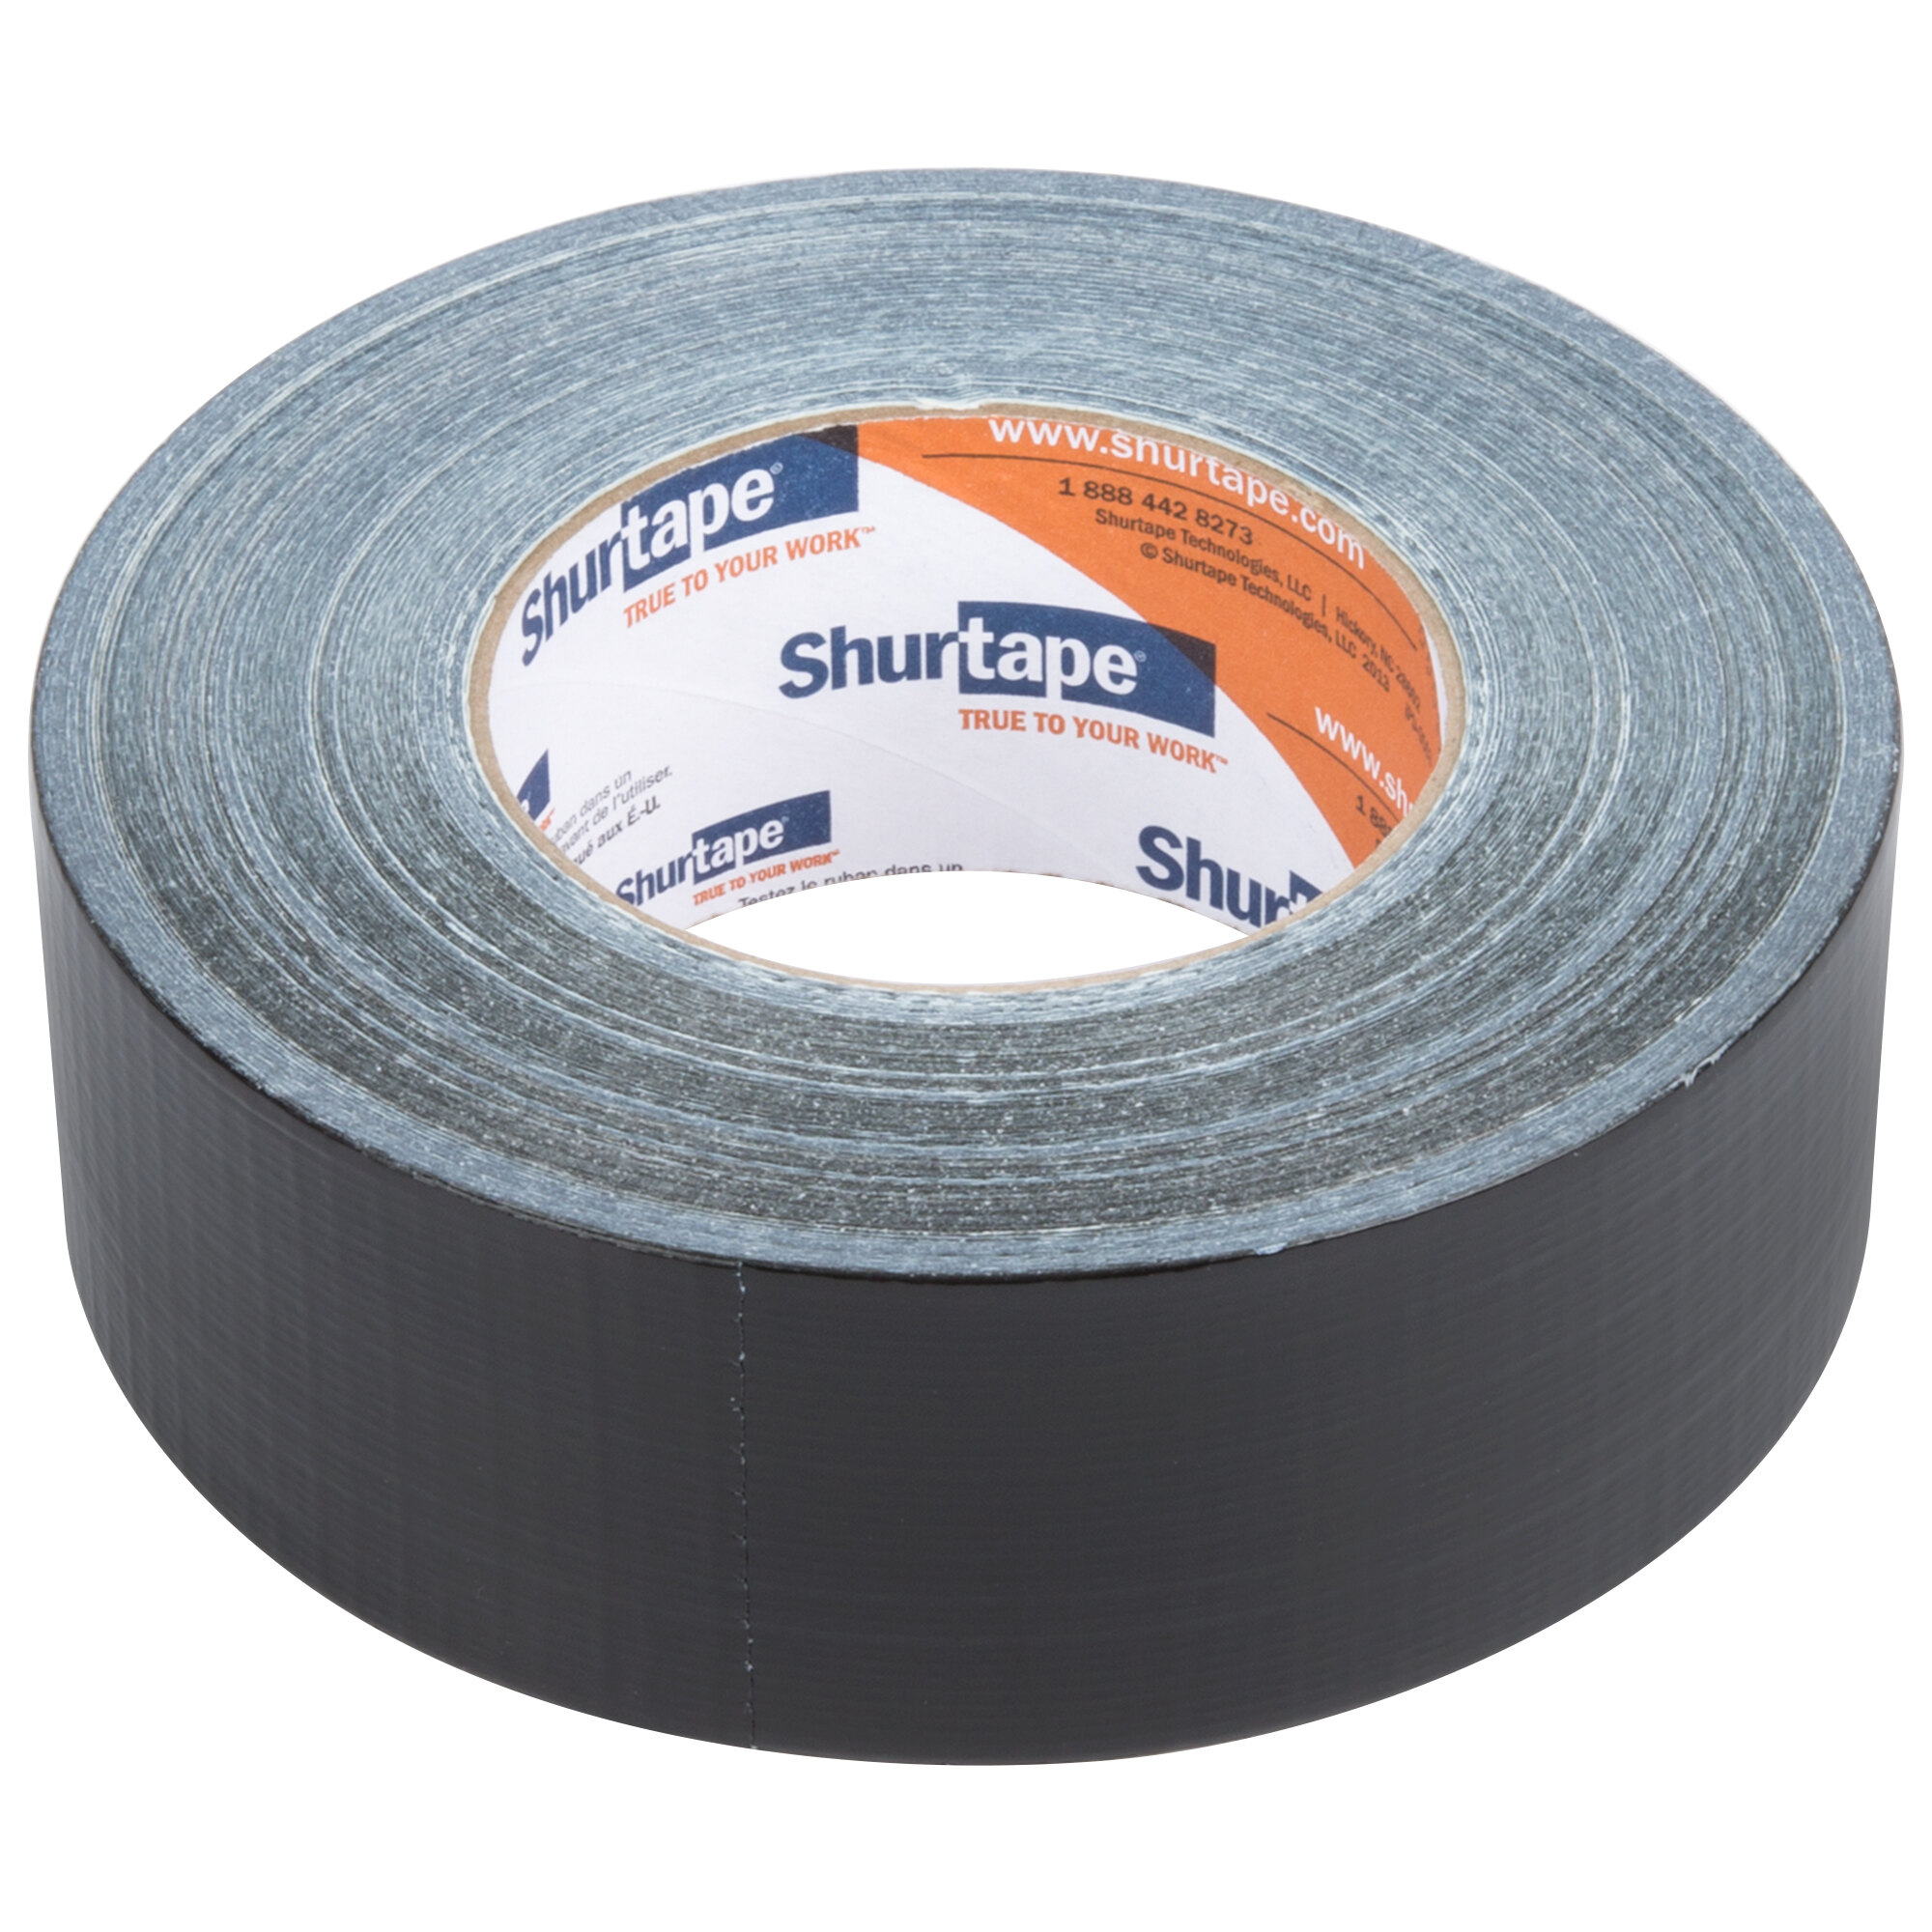 shurtape carpet tape